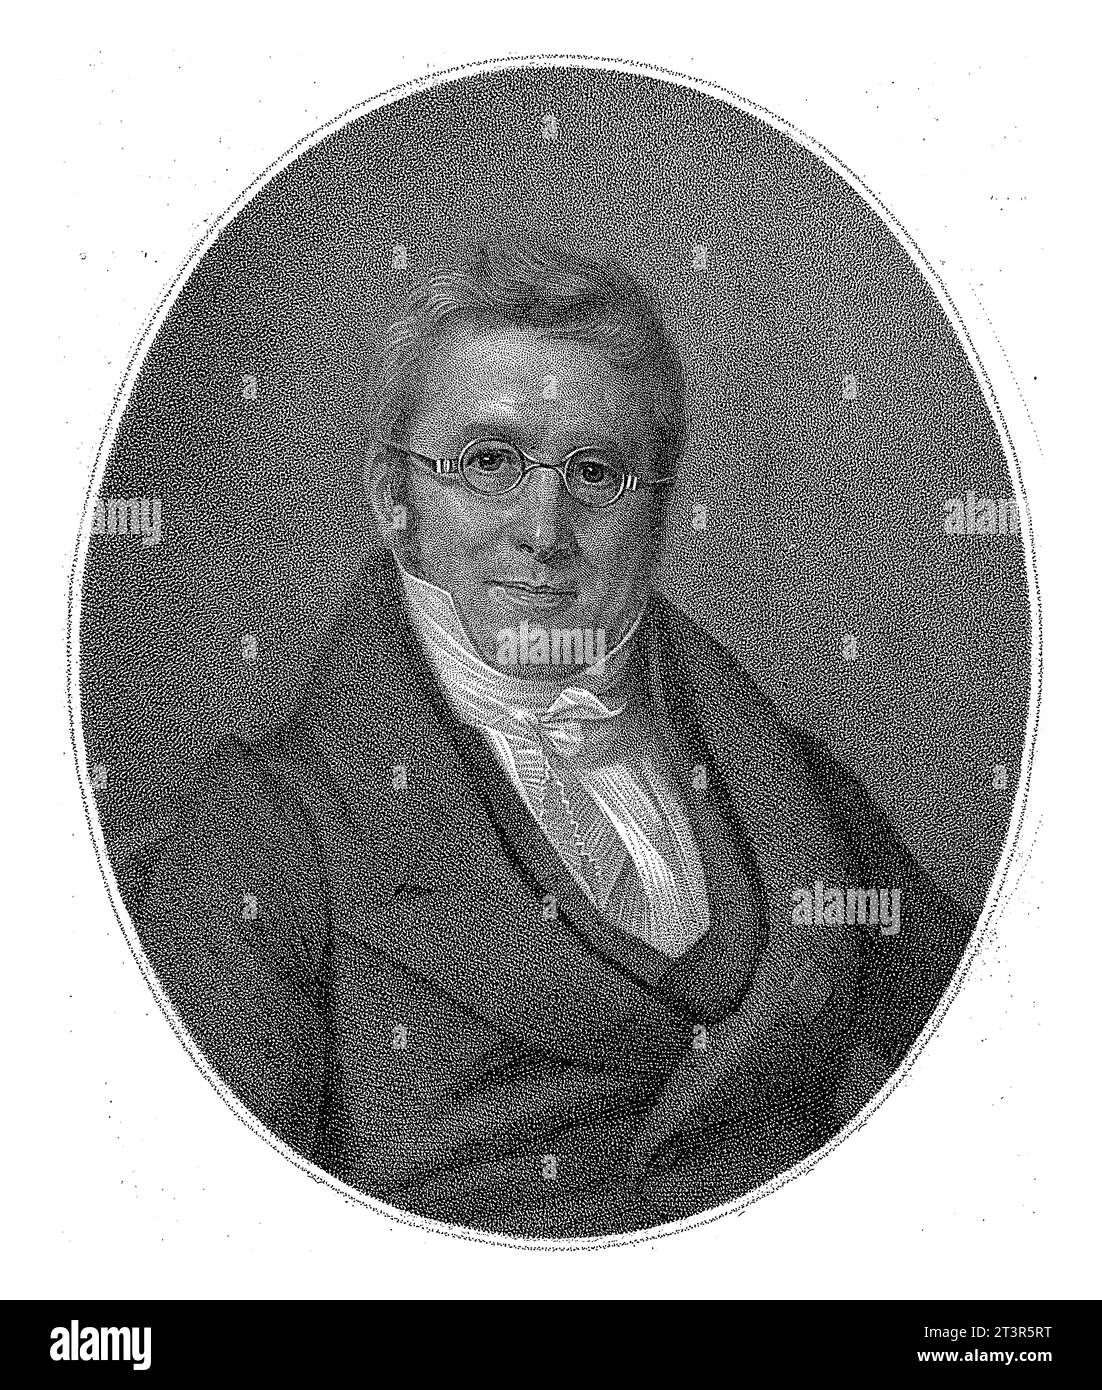 Portret van Alphonse Pyramus de Candolle, Pierre Elie Bovet, after Amelie Munier, 1811 - 1875 Stock Photo